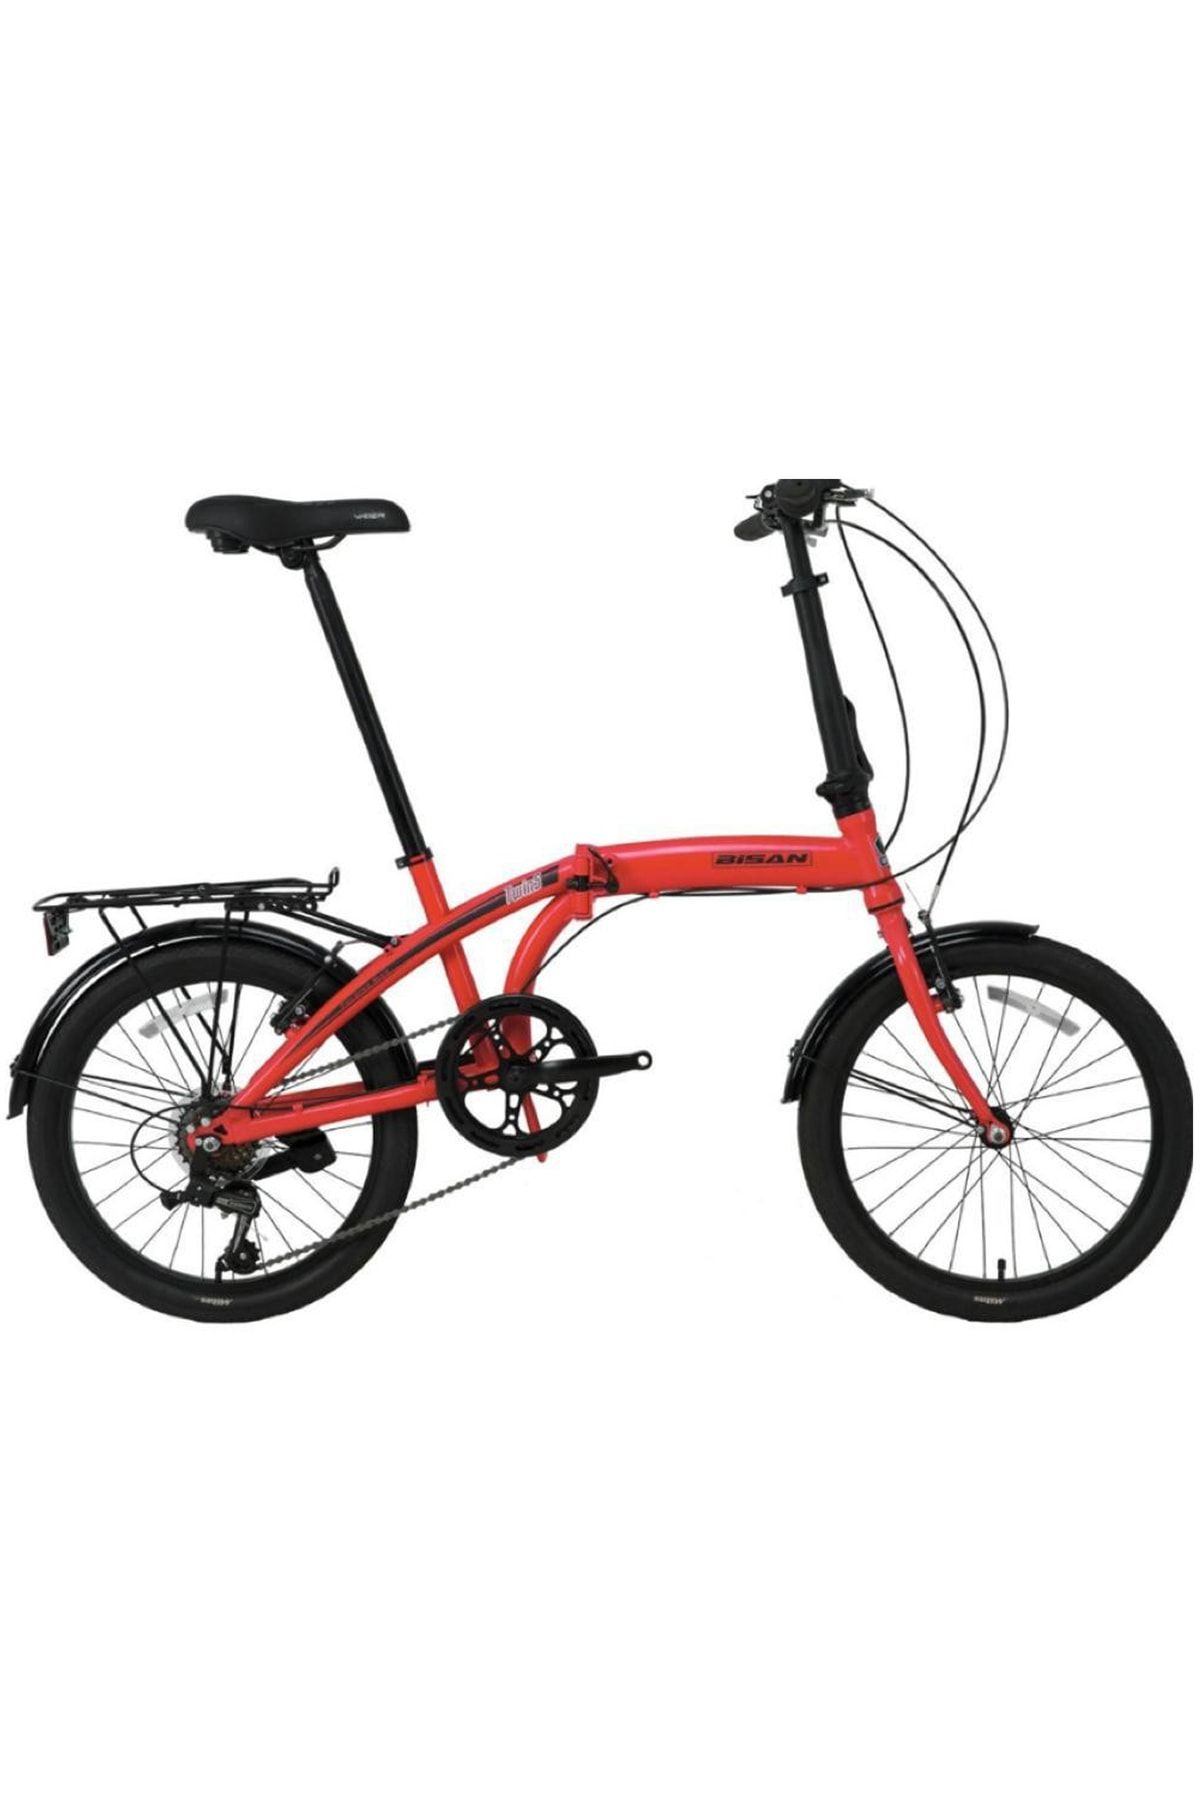 Bisan Twın-s 20 Jant 280h 6-vites Katlanır Bisiklet (renk: Kırmızı/siyah)